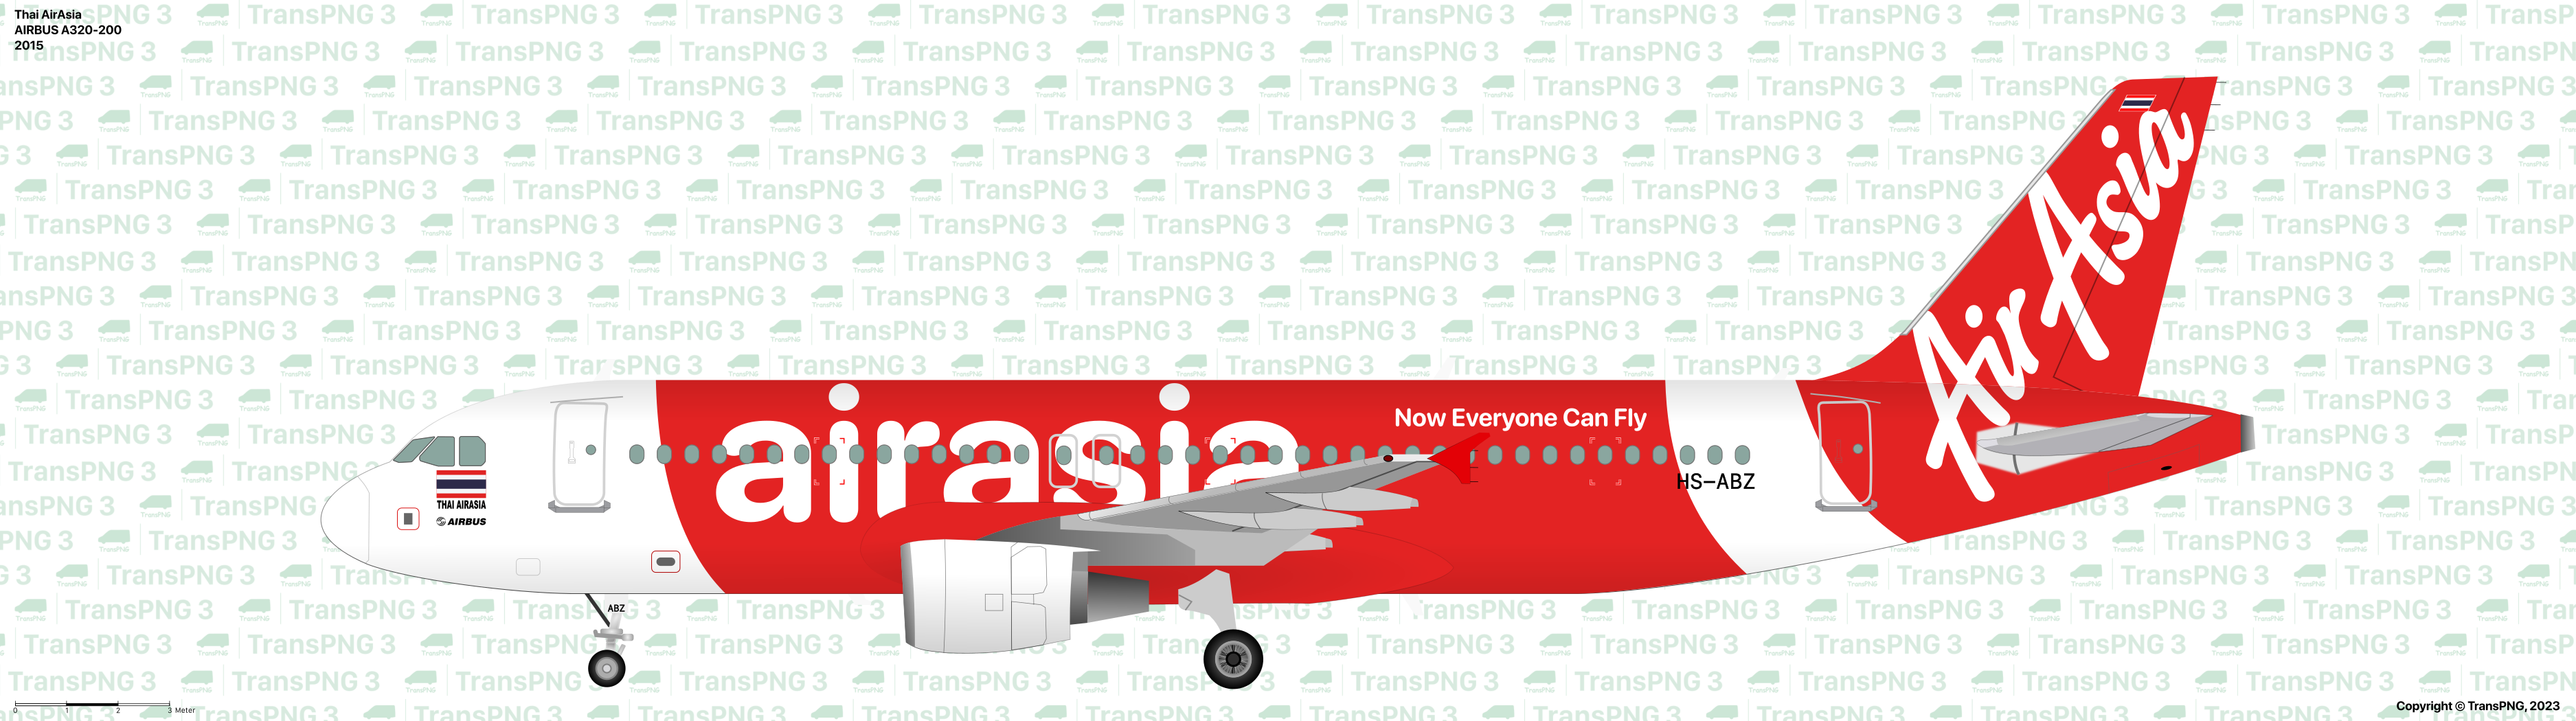 TransPNG | 分享世界各地多種交通工具的優秀繪圖 - 客機 53279120360_8282832465_o